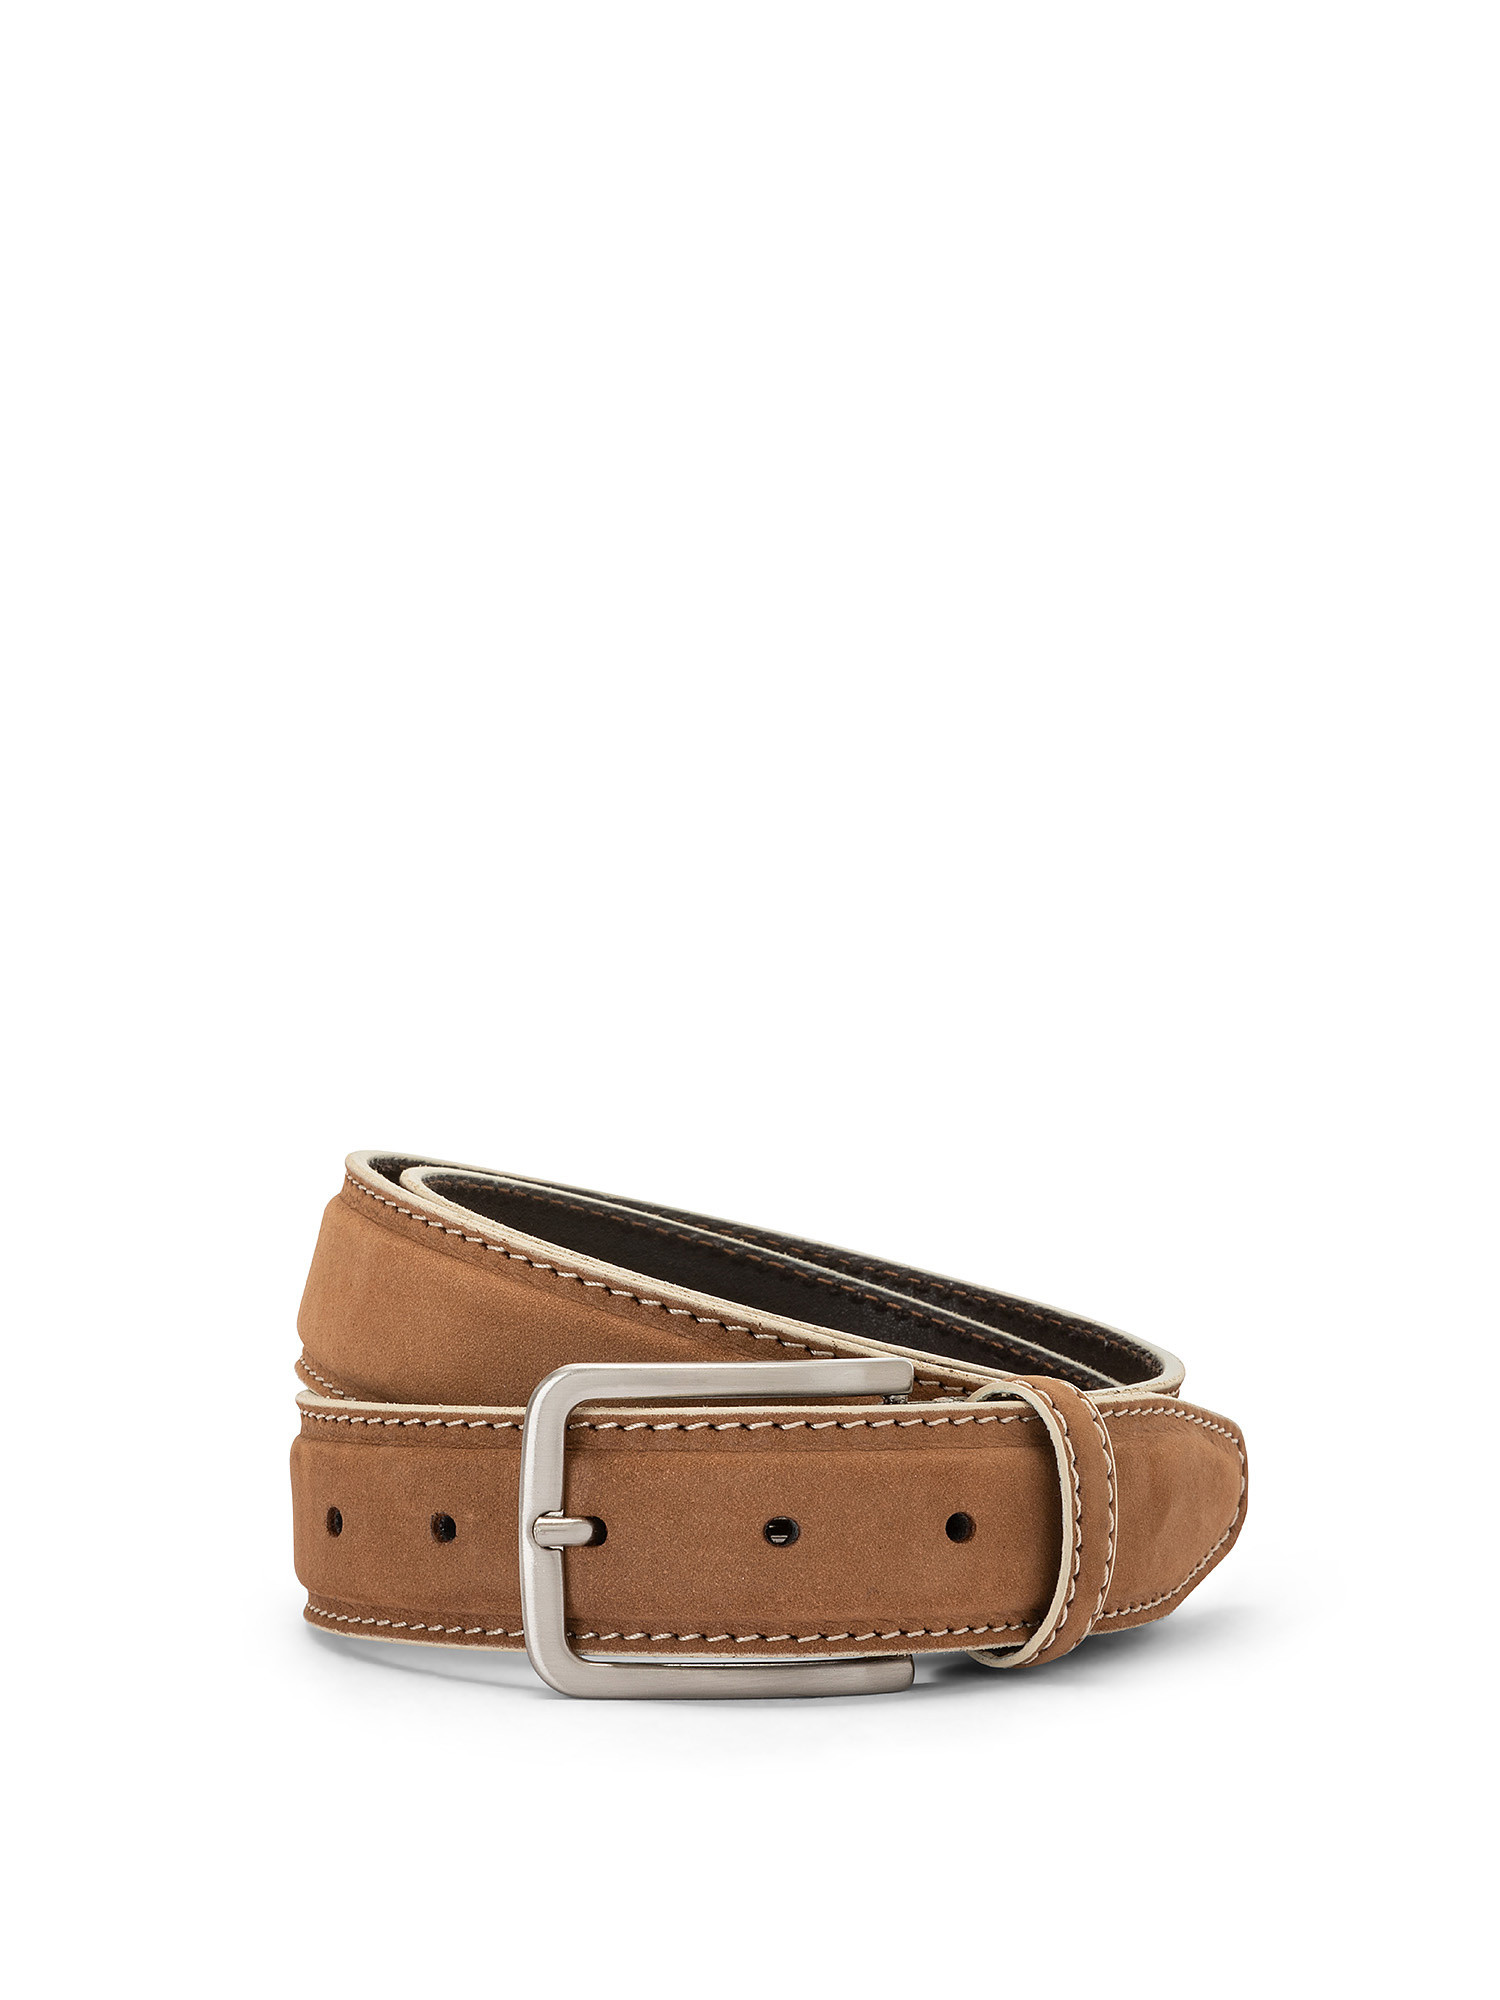 Solid color nubuck leather belt, Beige, large image number 0